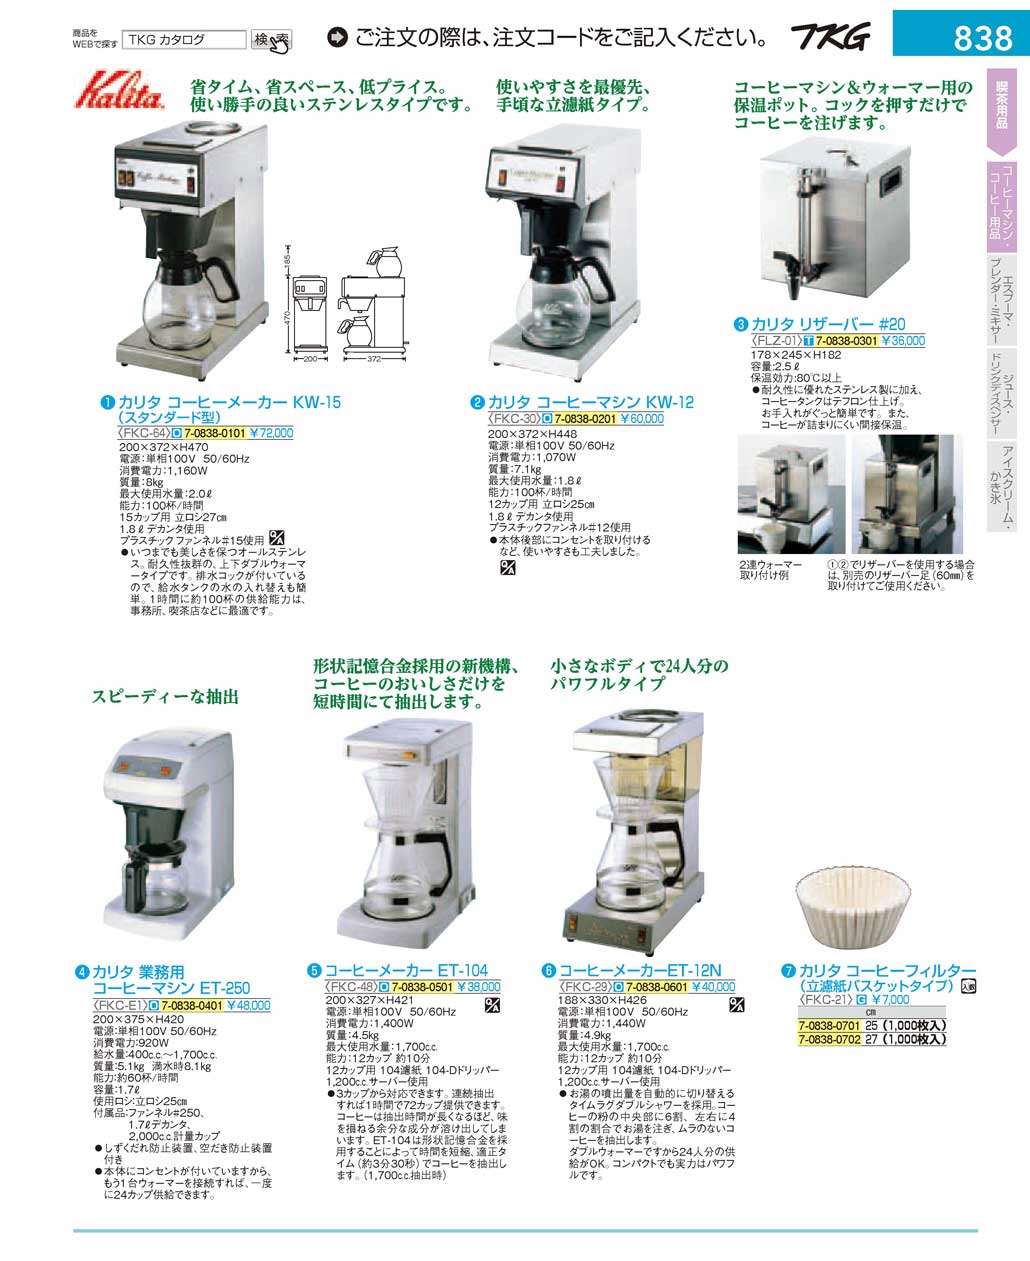 最新デザインの 業務用コーヒーマシン KW-17 62053